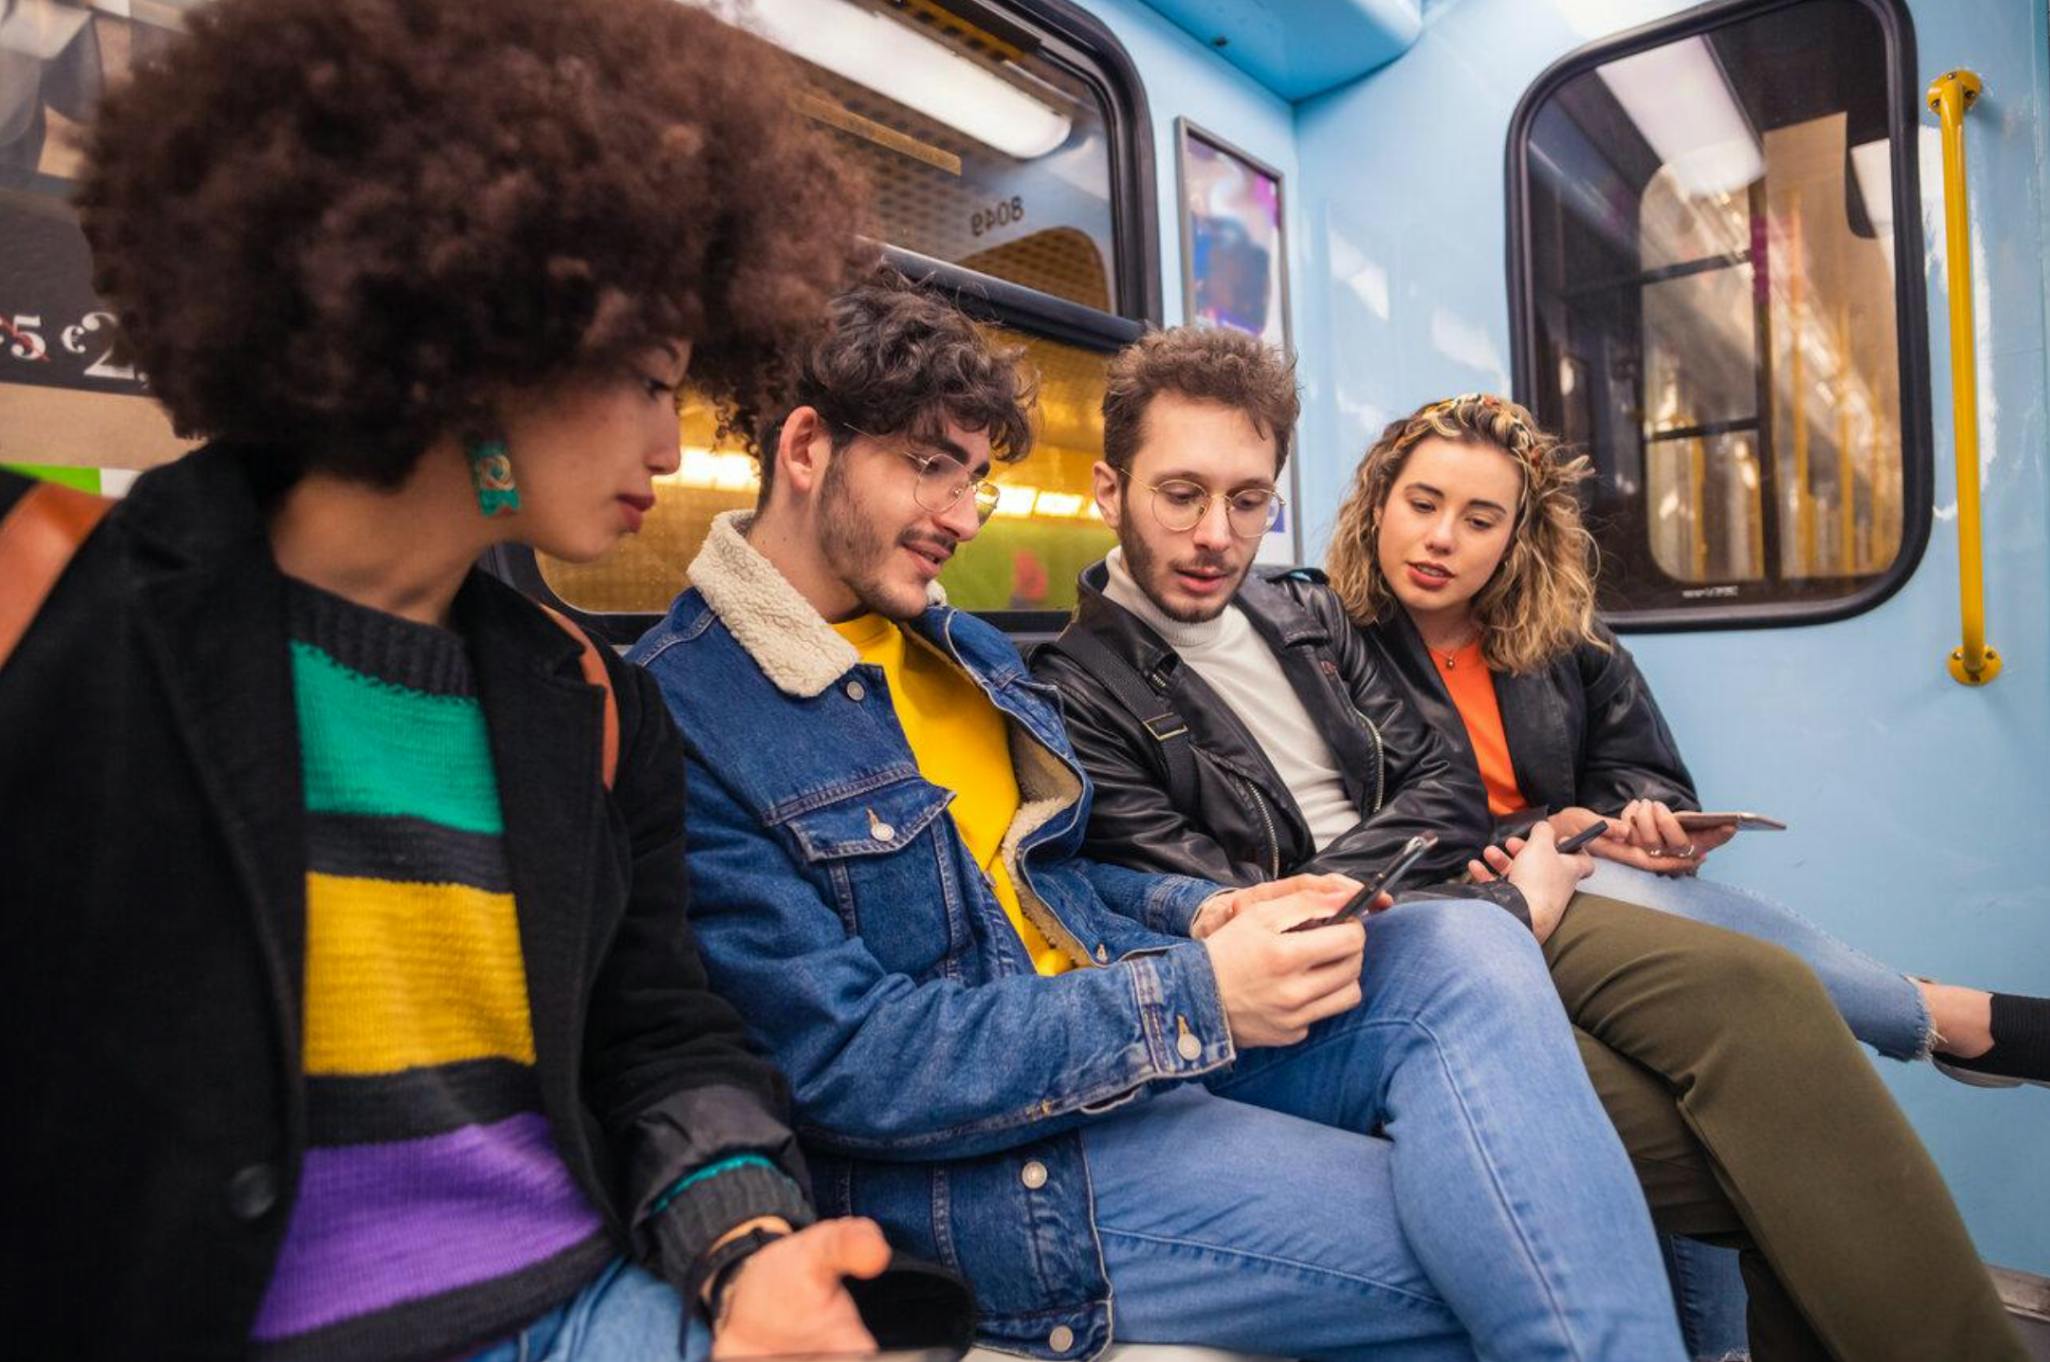 Groupe d'amis de quatre personnes voyageant dans le métro utilisant un smartphone accro aux tendances sociales et virales